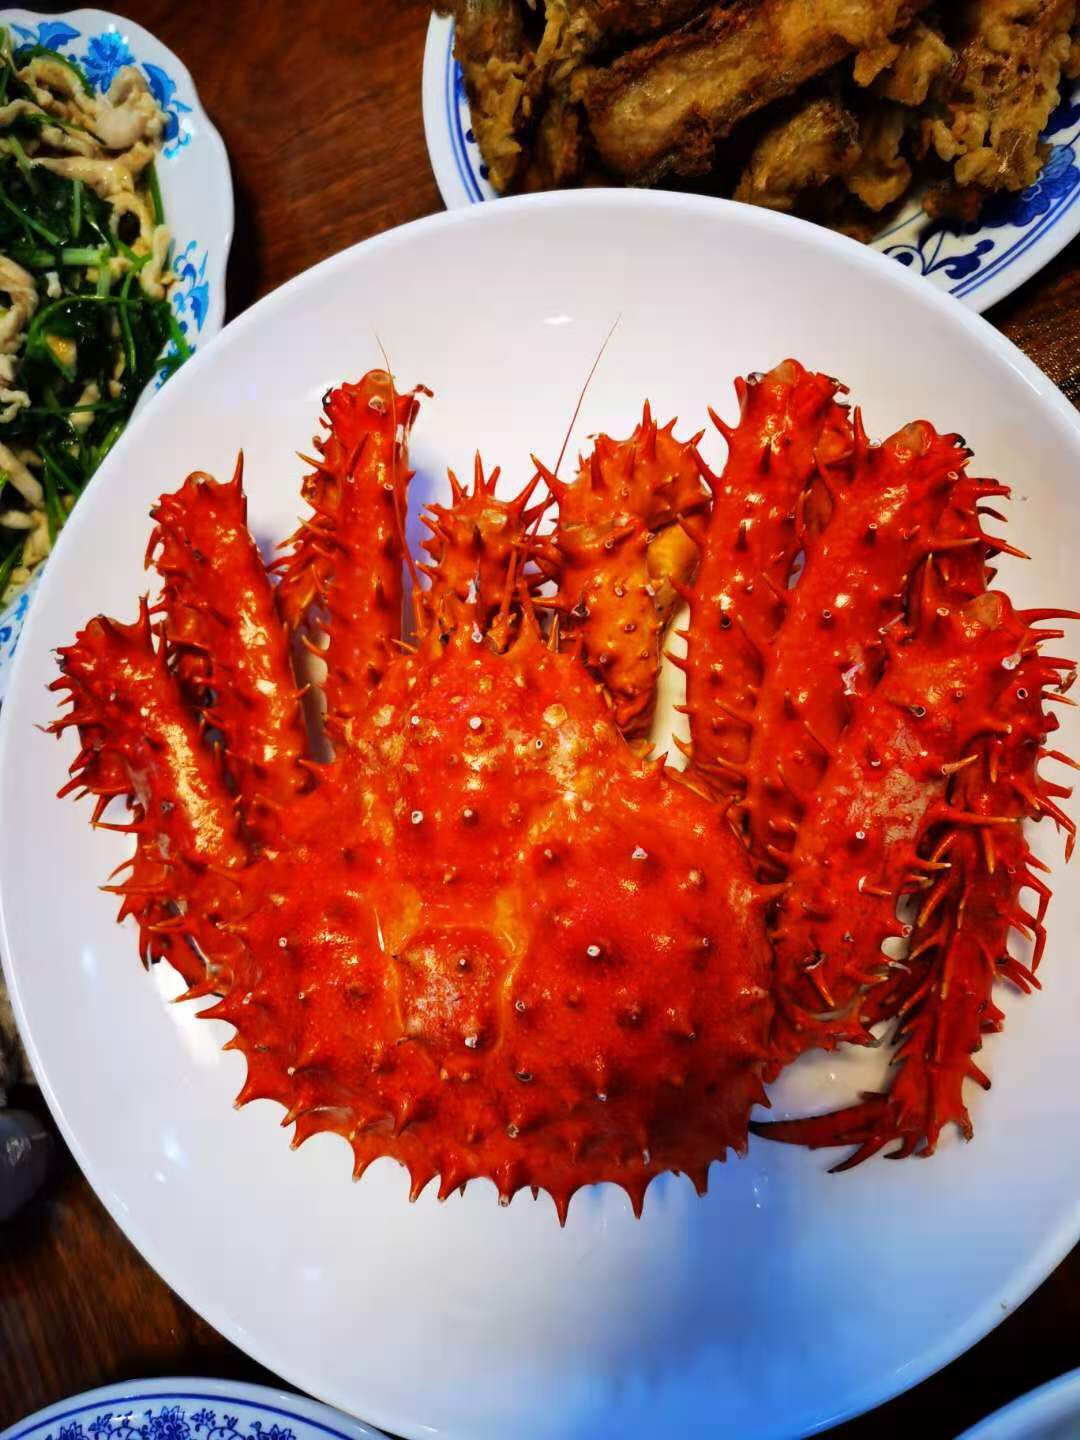 阿拉斯加帝王蟹皇帝蟹帝皇蟹10斤5澳洲鲜活冷冻海鲜海鲜特大螃蟹